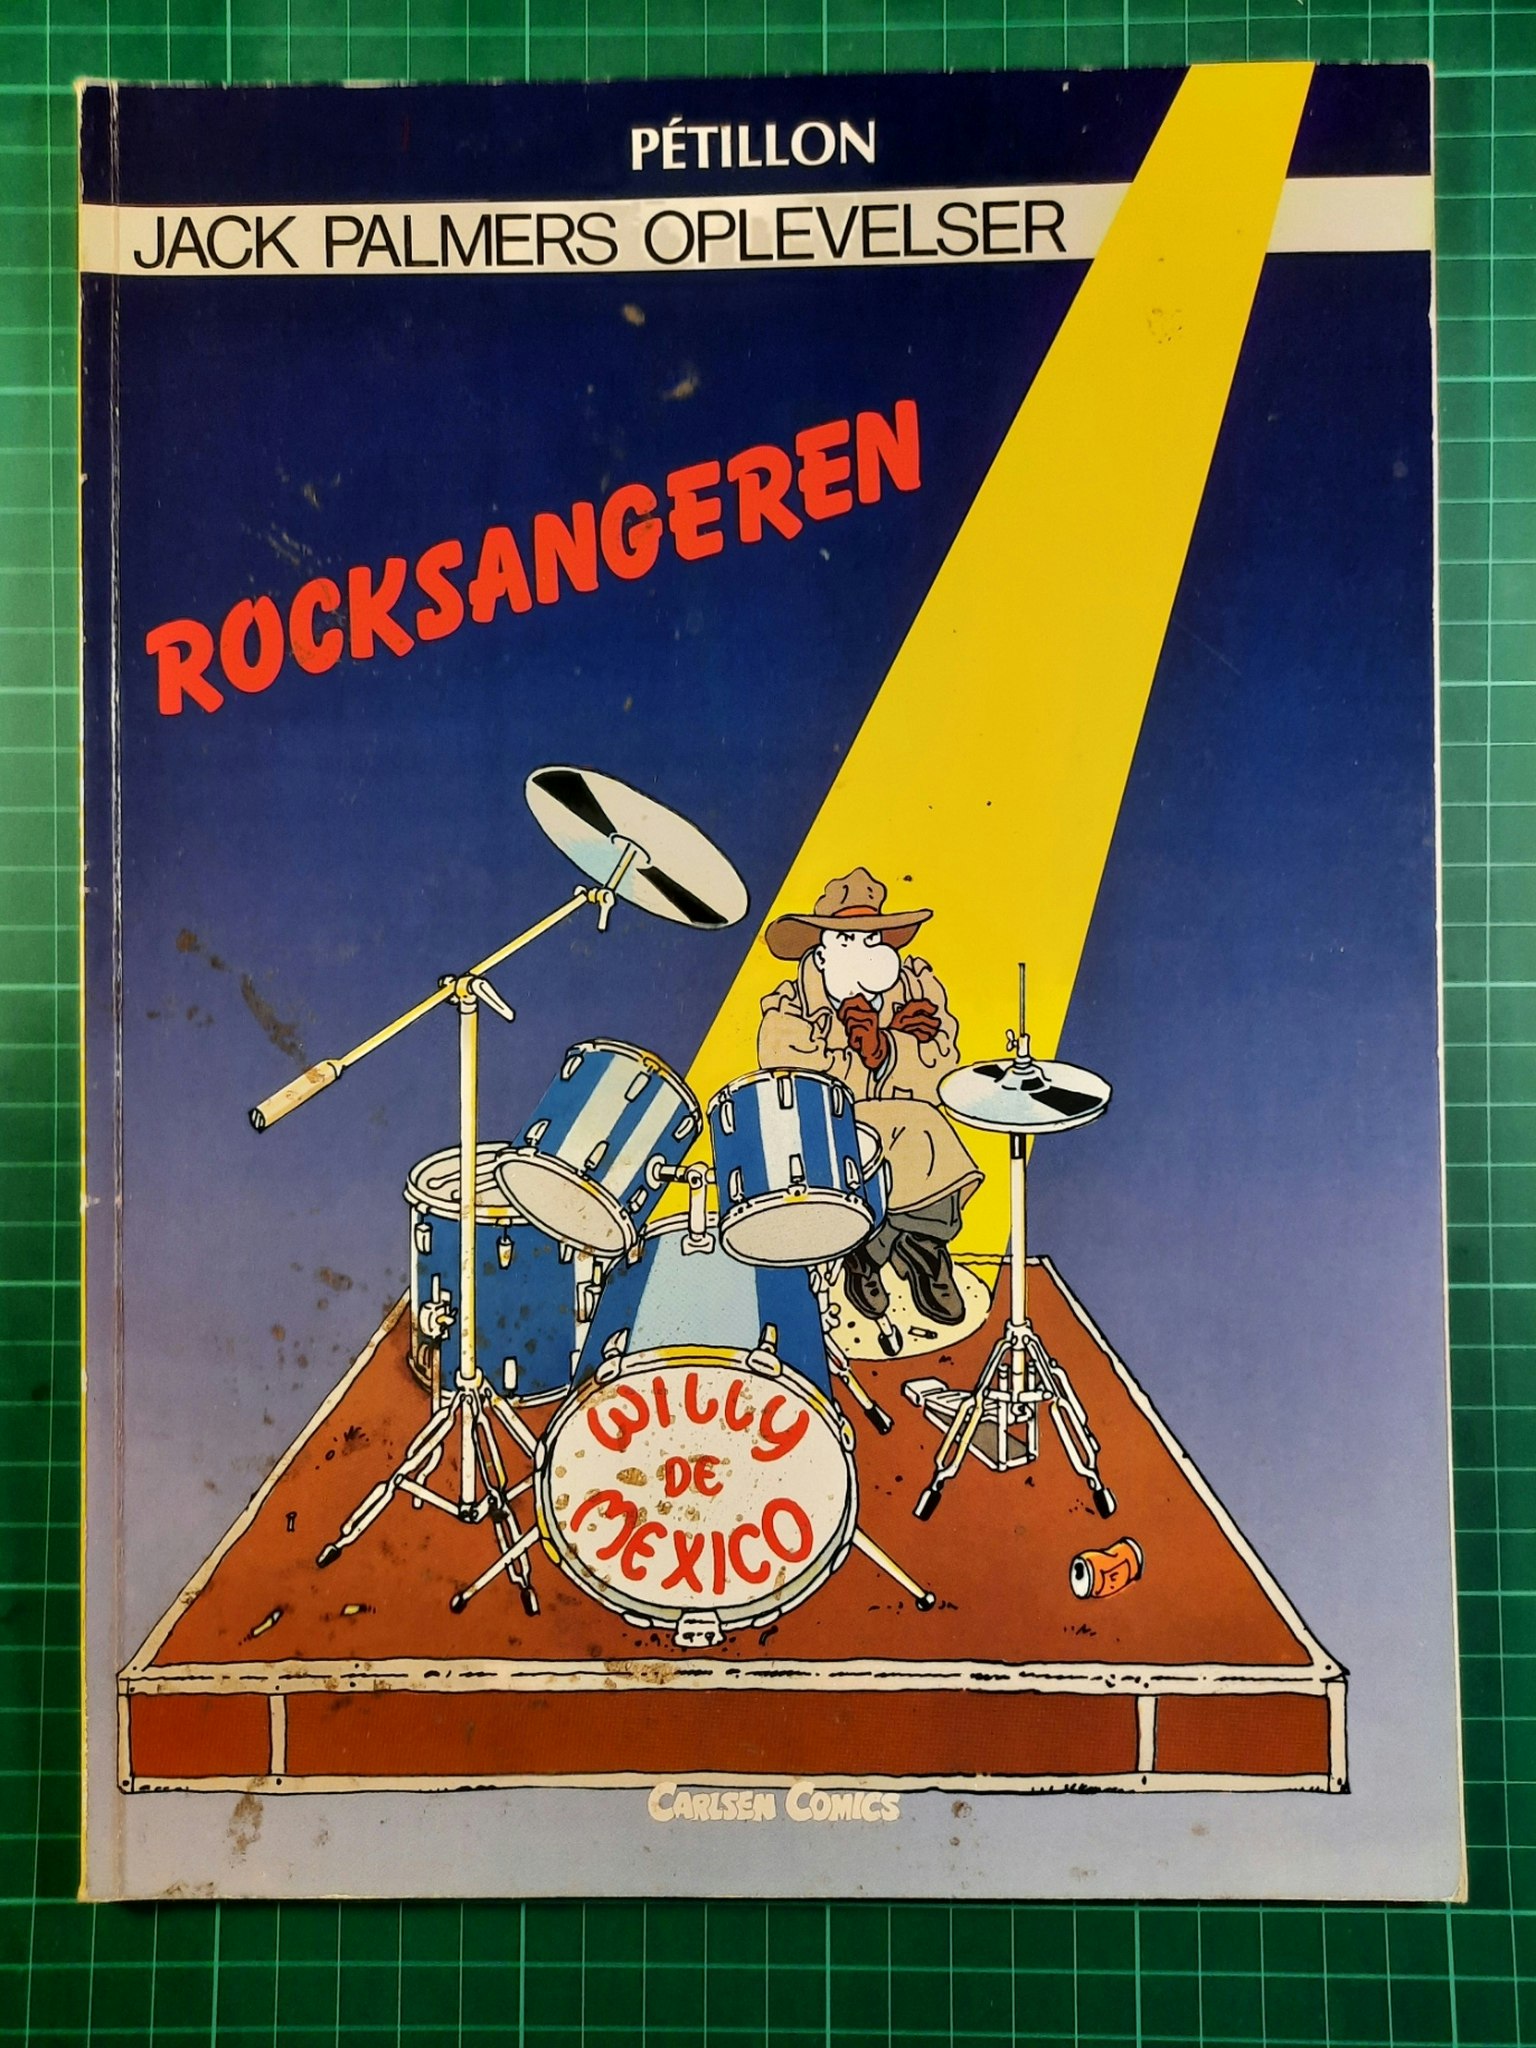 Jack Palmers oplevelser 2 Rockesangeren (Dansk)